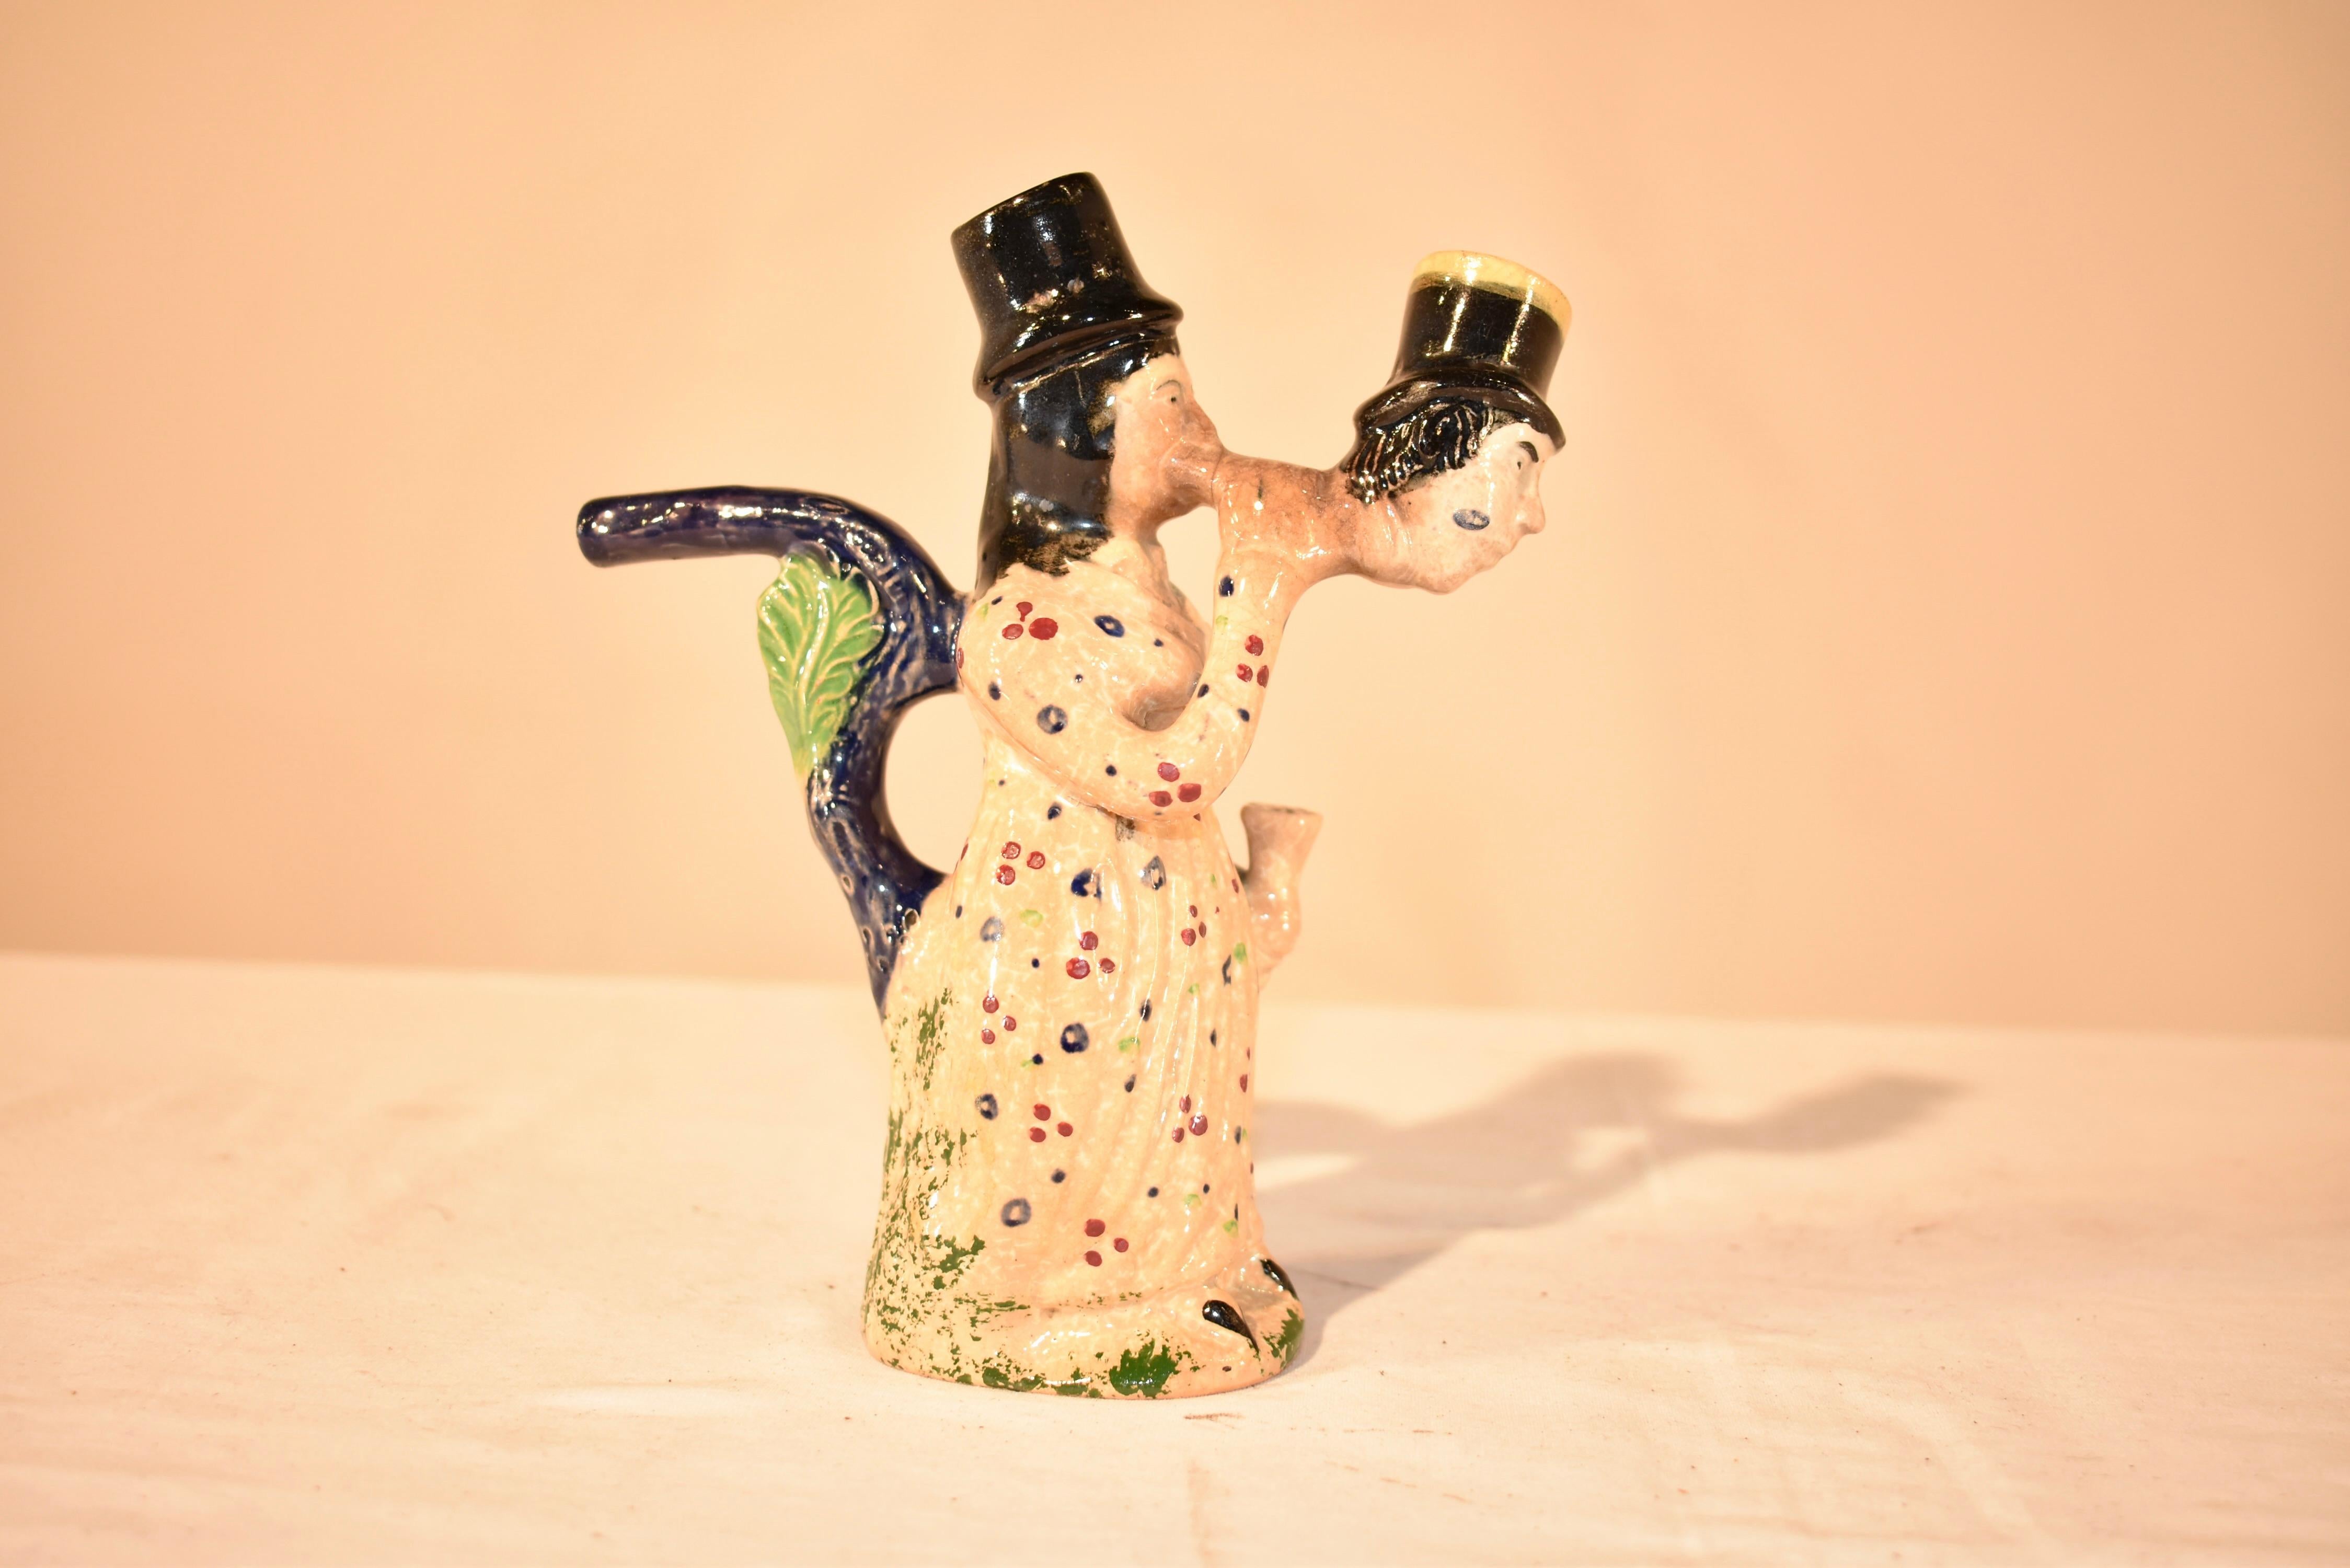 Anfang des 19. Jahrhunderts  Prattware-Pfeife, hergestellt in der Region Staffordshire in England.  Diese figurale Pfeife ist ungewöhnlich und zeigt eine Frau, die durch den Kopf eines Mannes raucht.  Sie ist mit einem geblümten Kleid bekleidet und